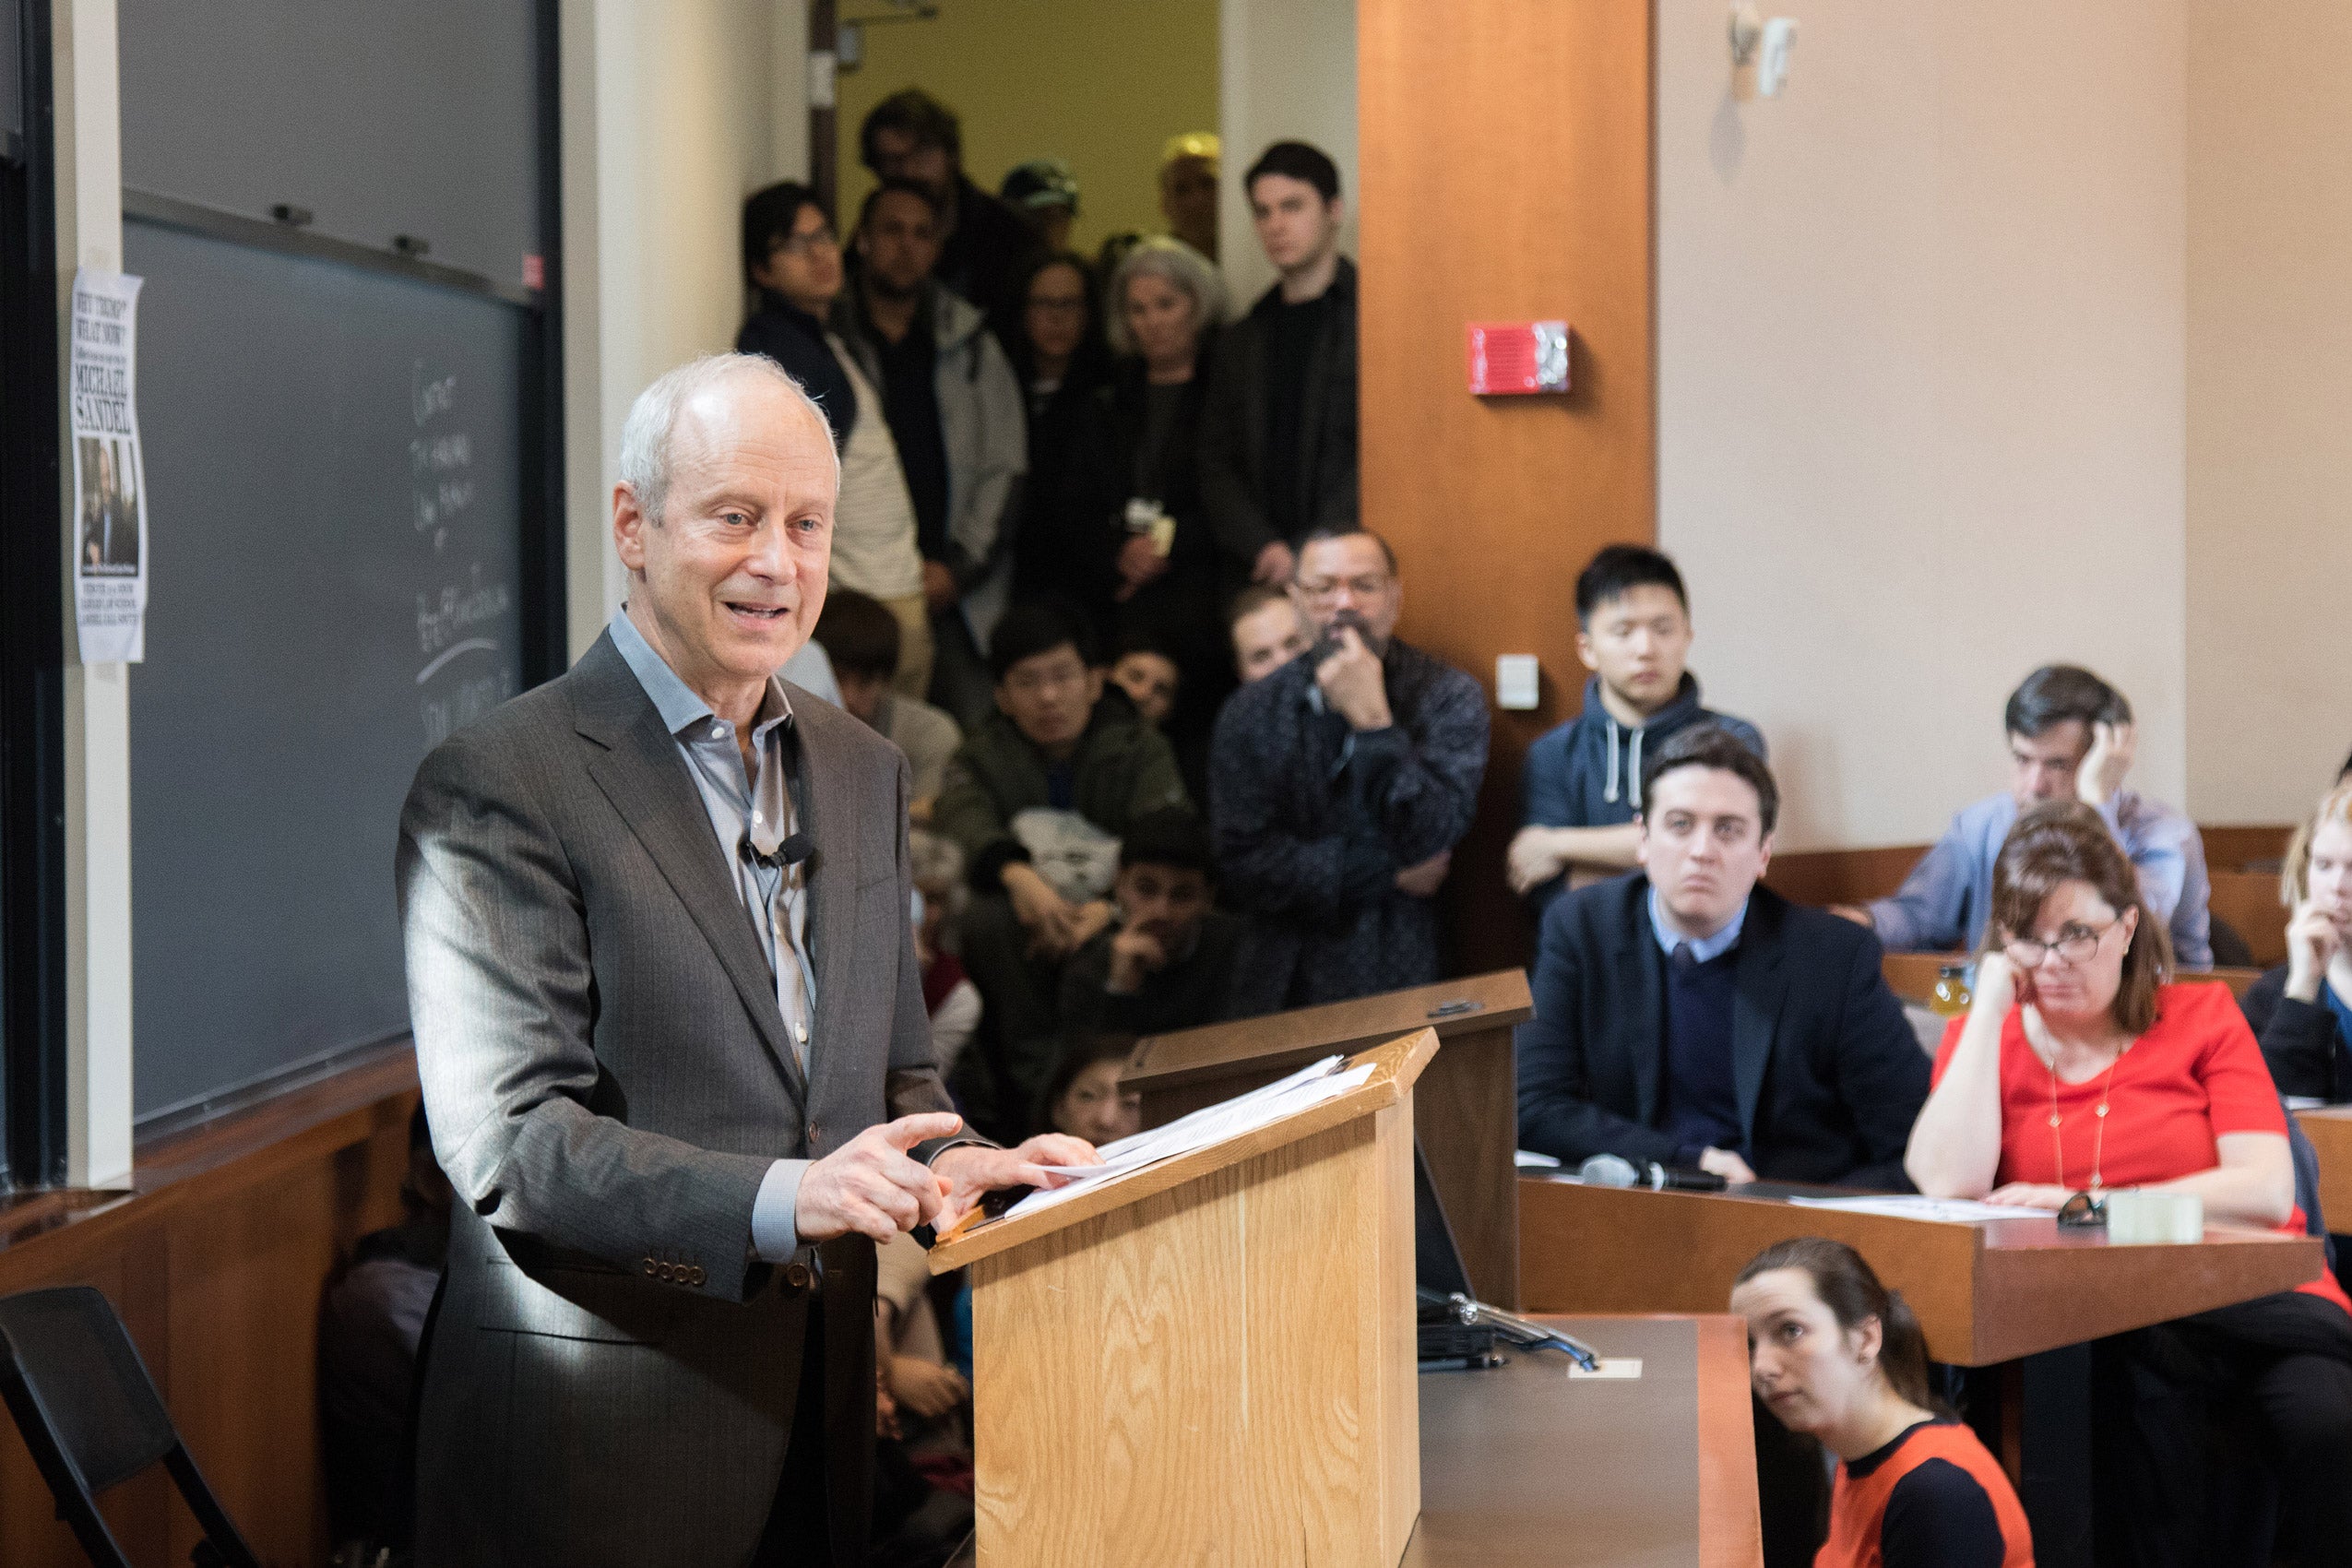 Michael Sandel in front of class